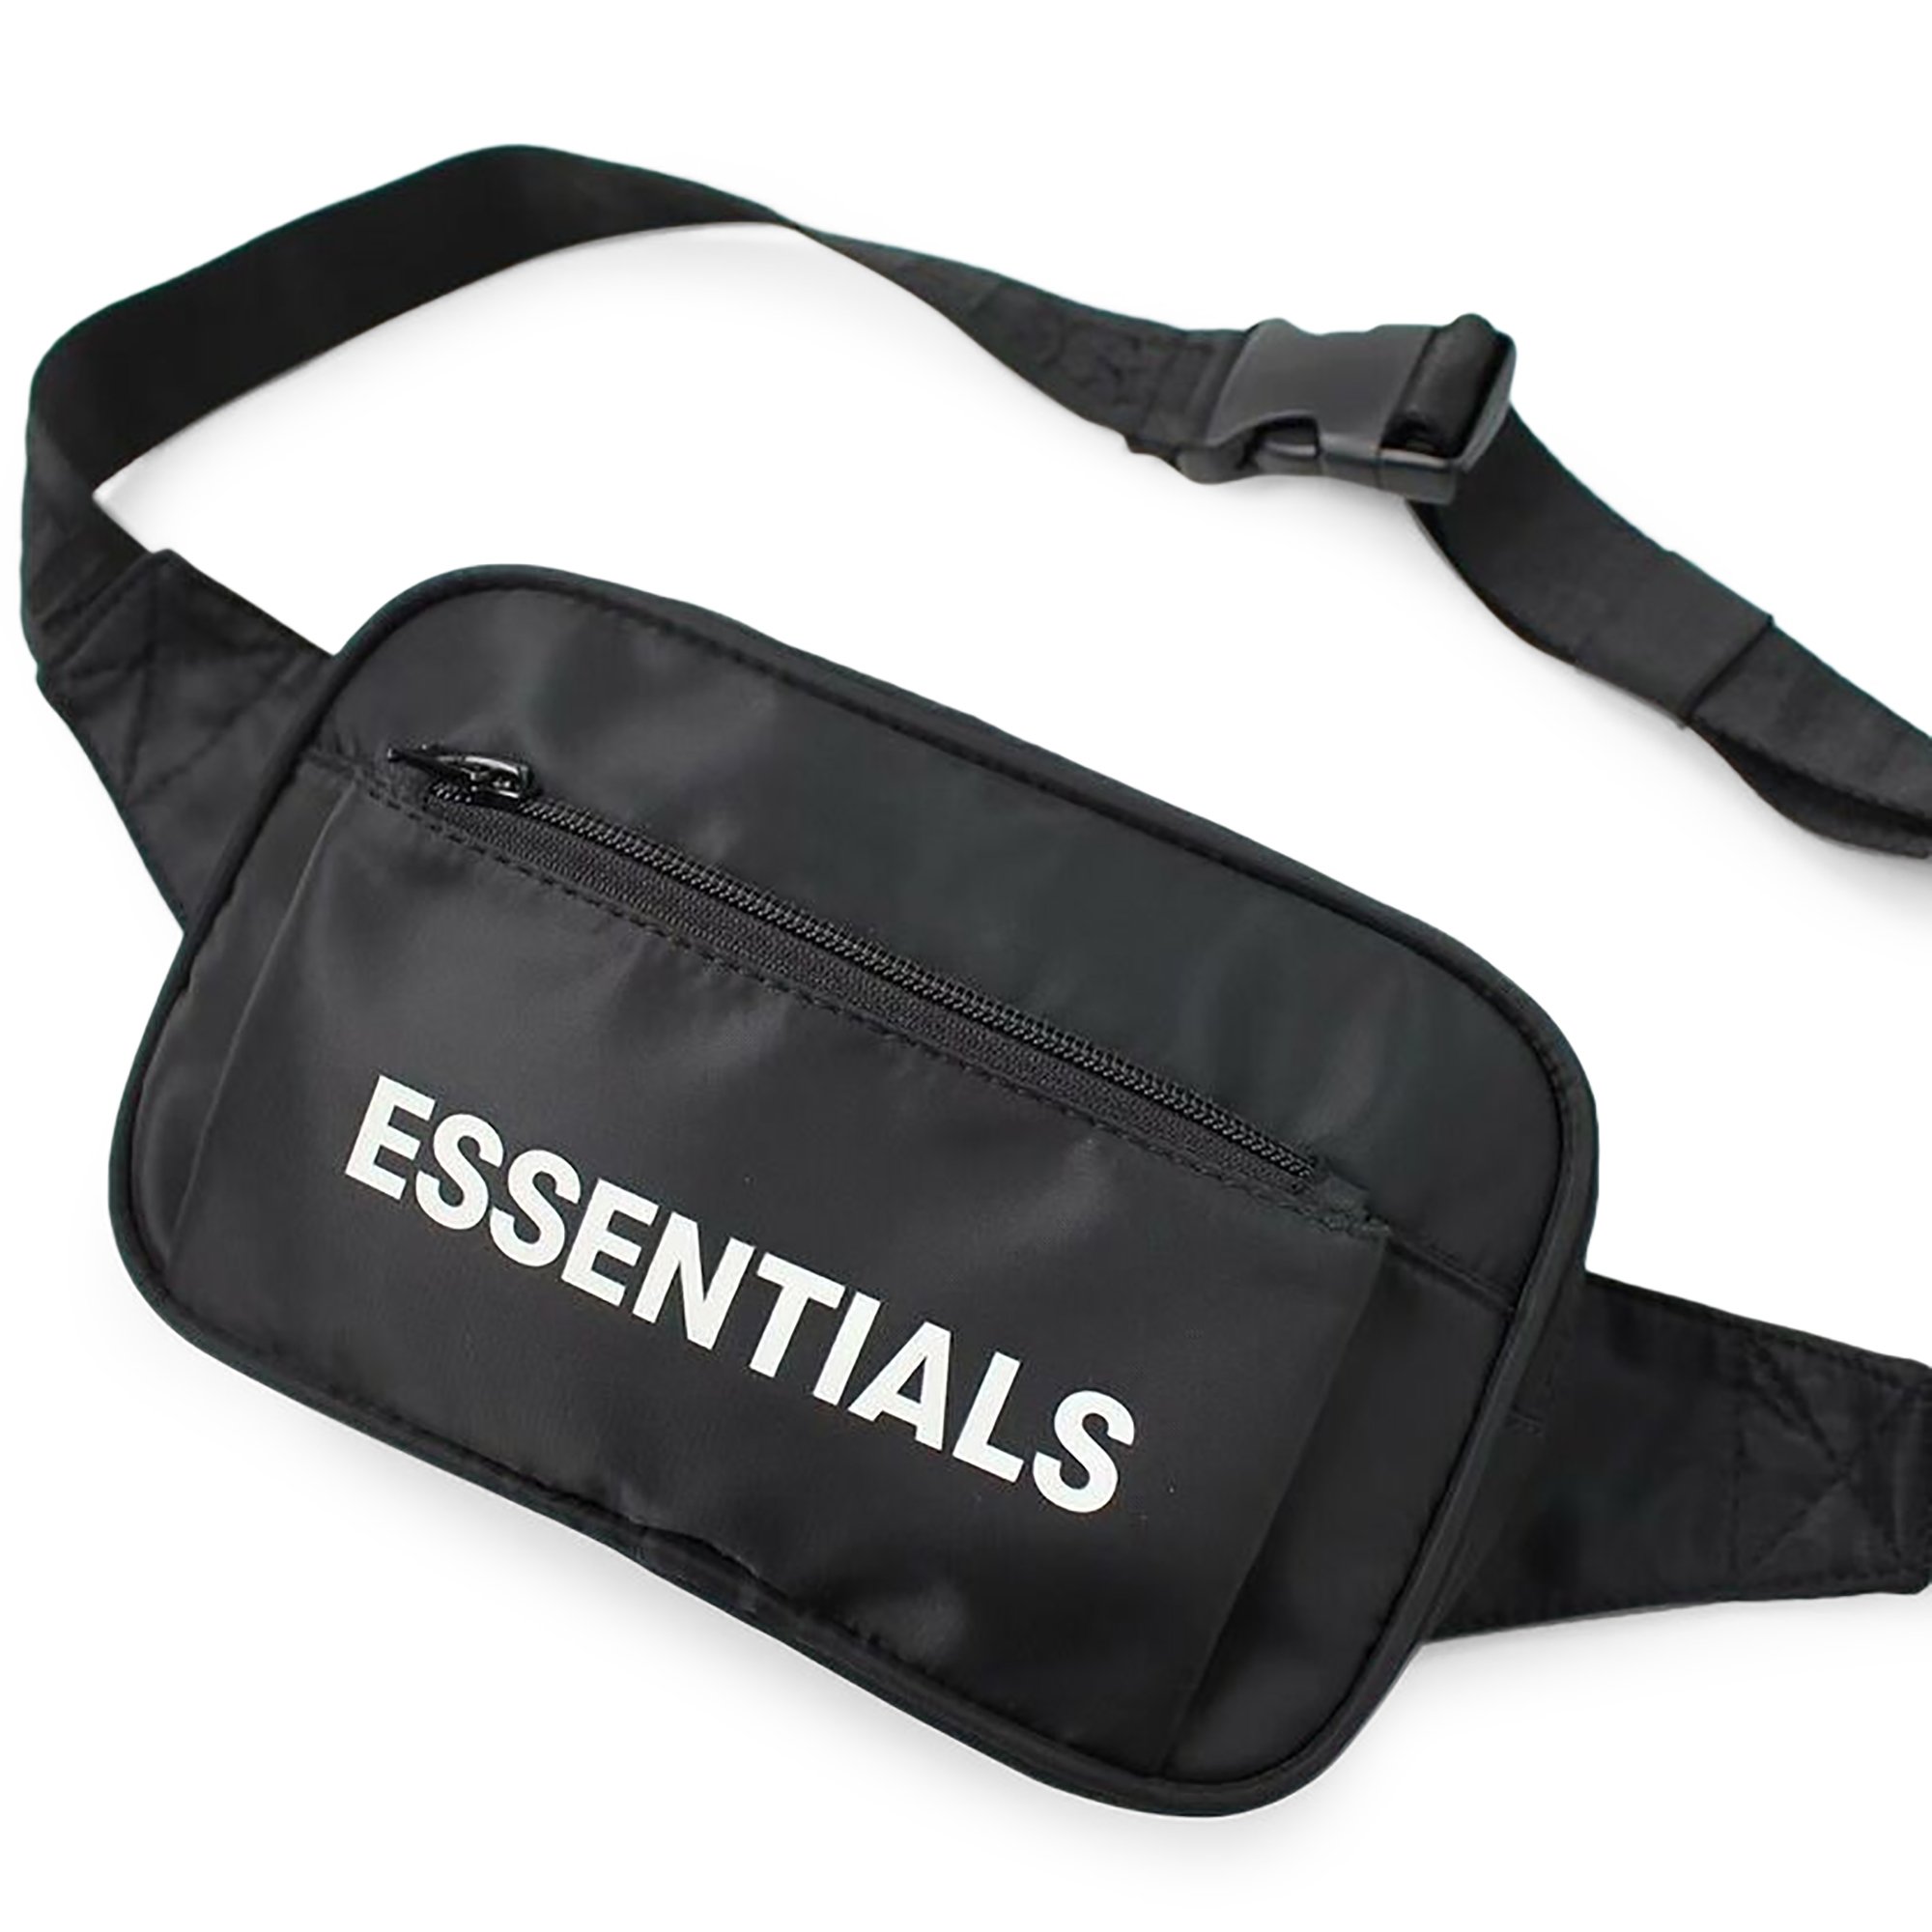 Buy Fear of God Essentials Crossbody Bag 'Black' - 0642 48525 0014 